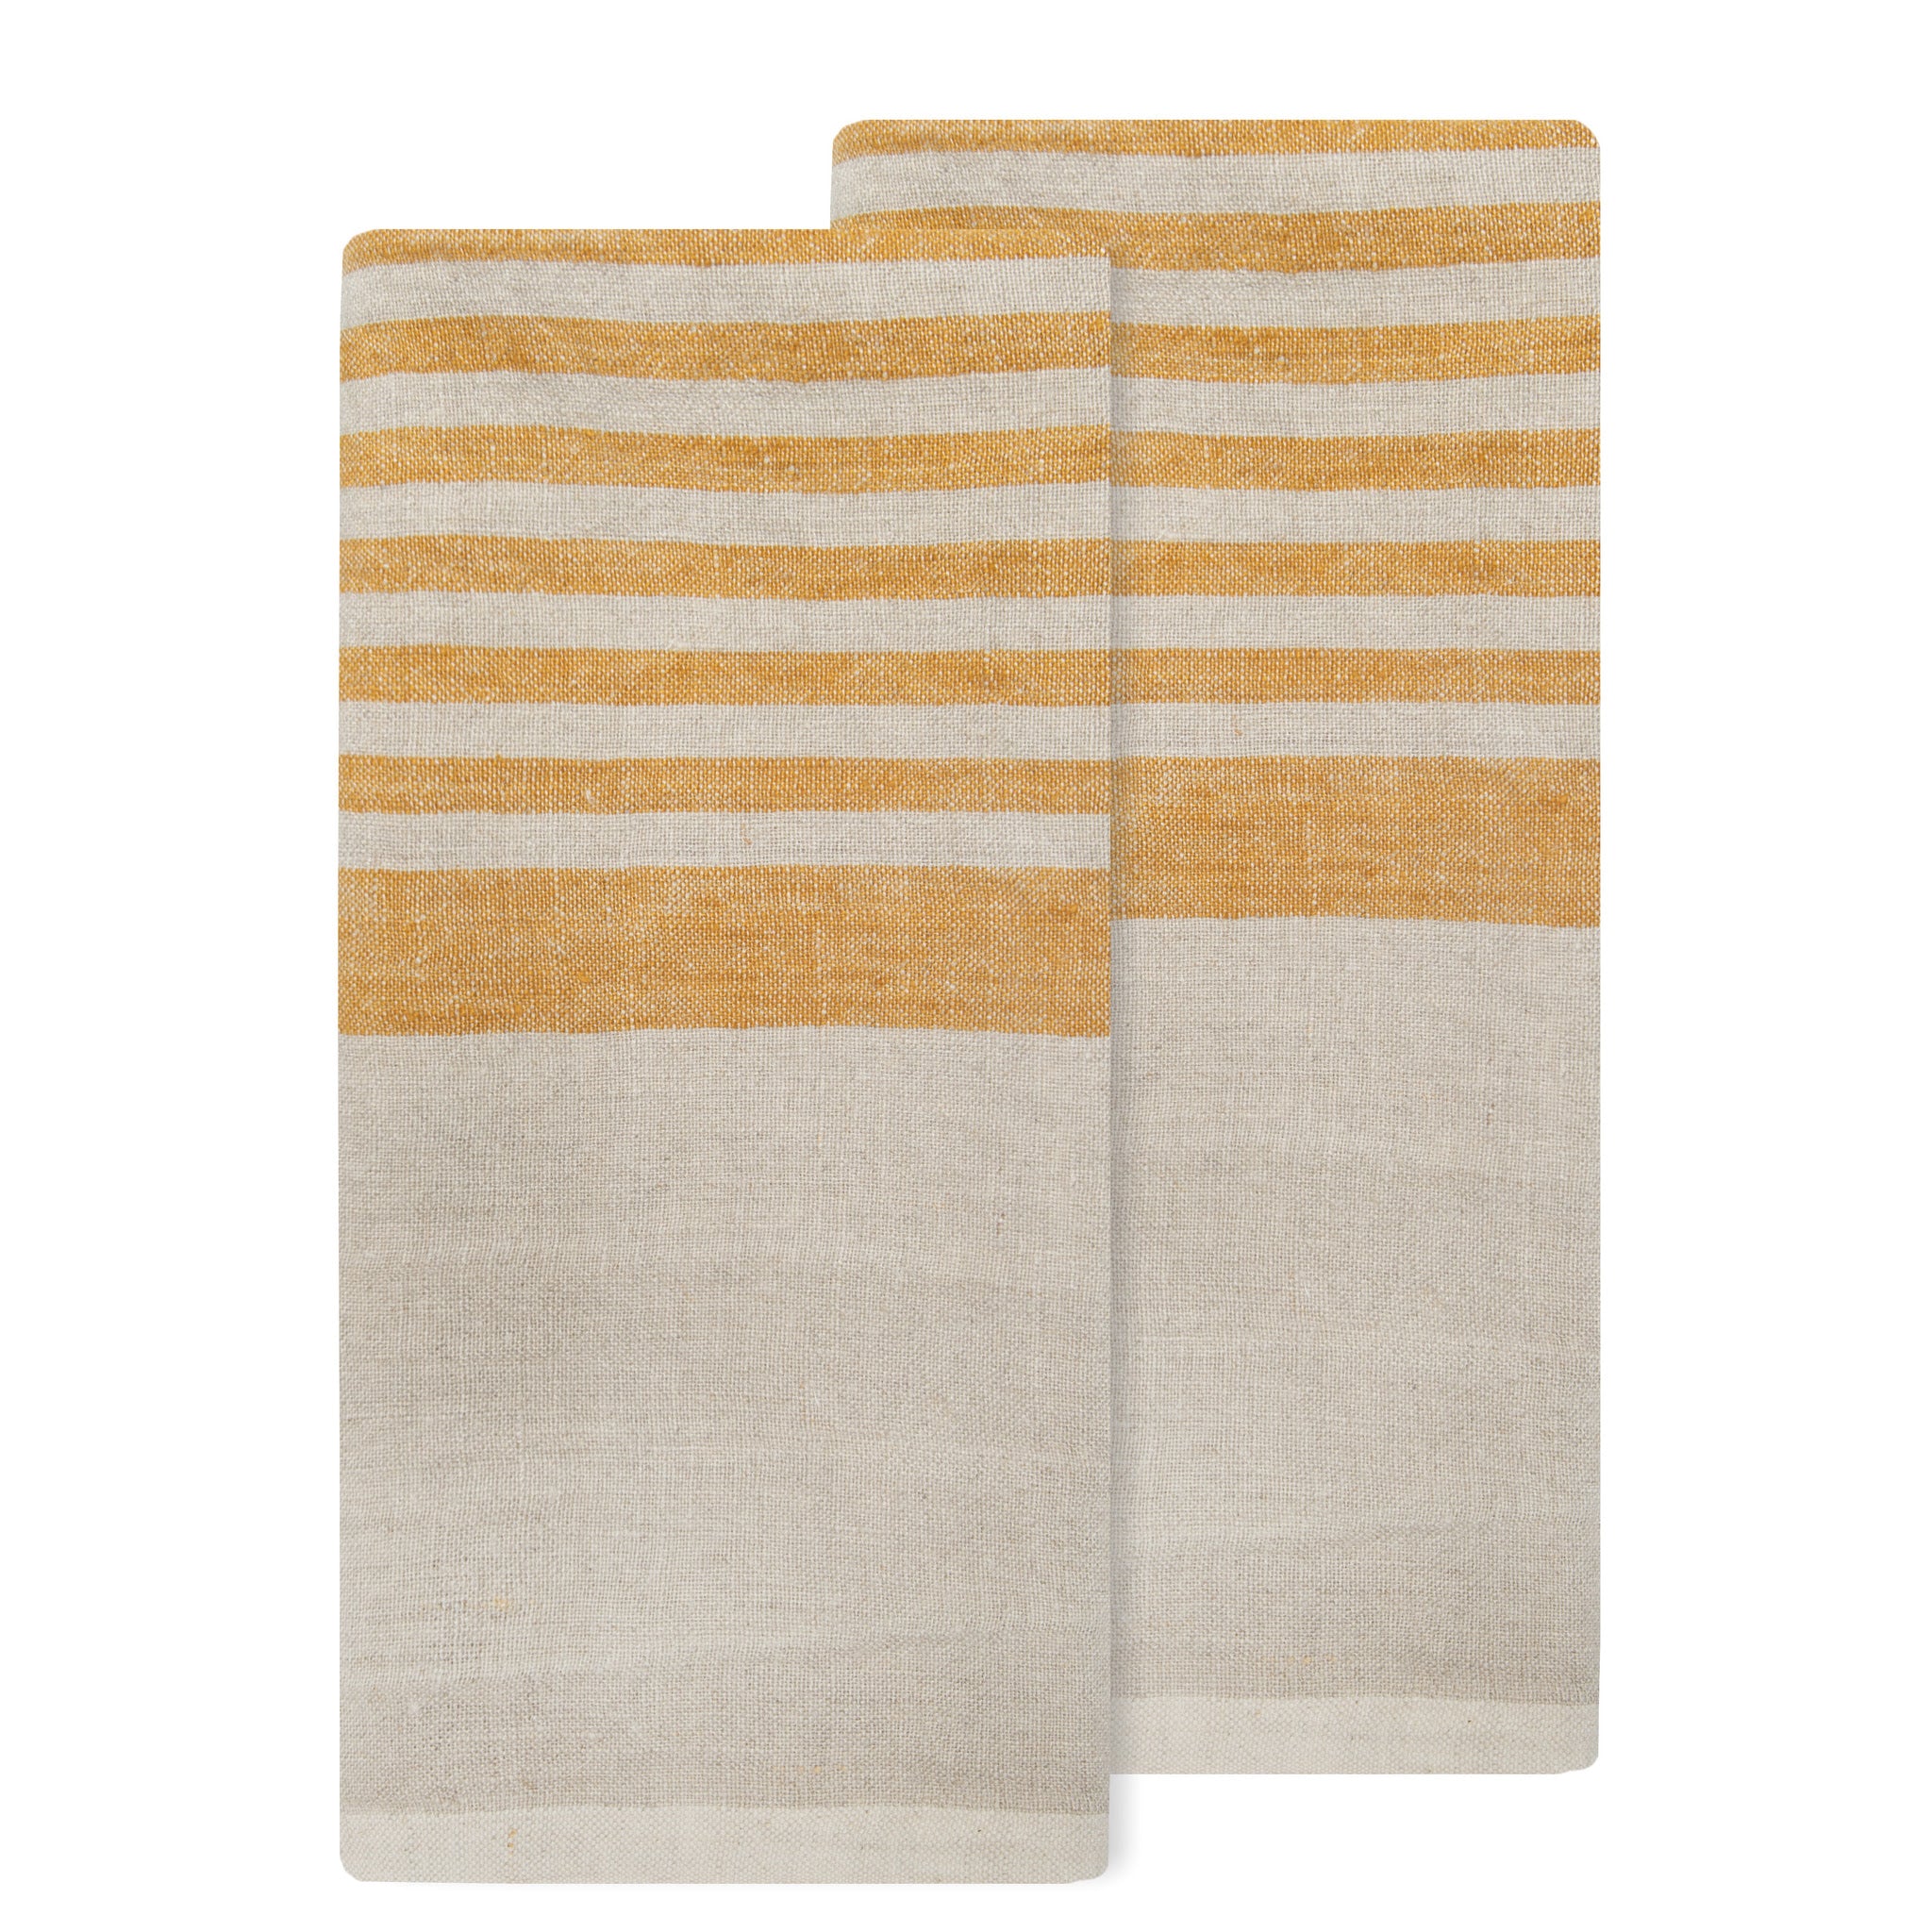 Brittany Natural Tea Towels 20x30 - Set of 2